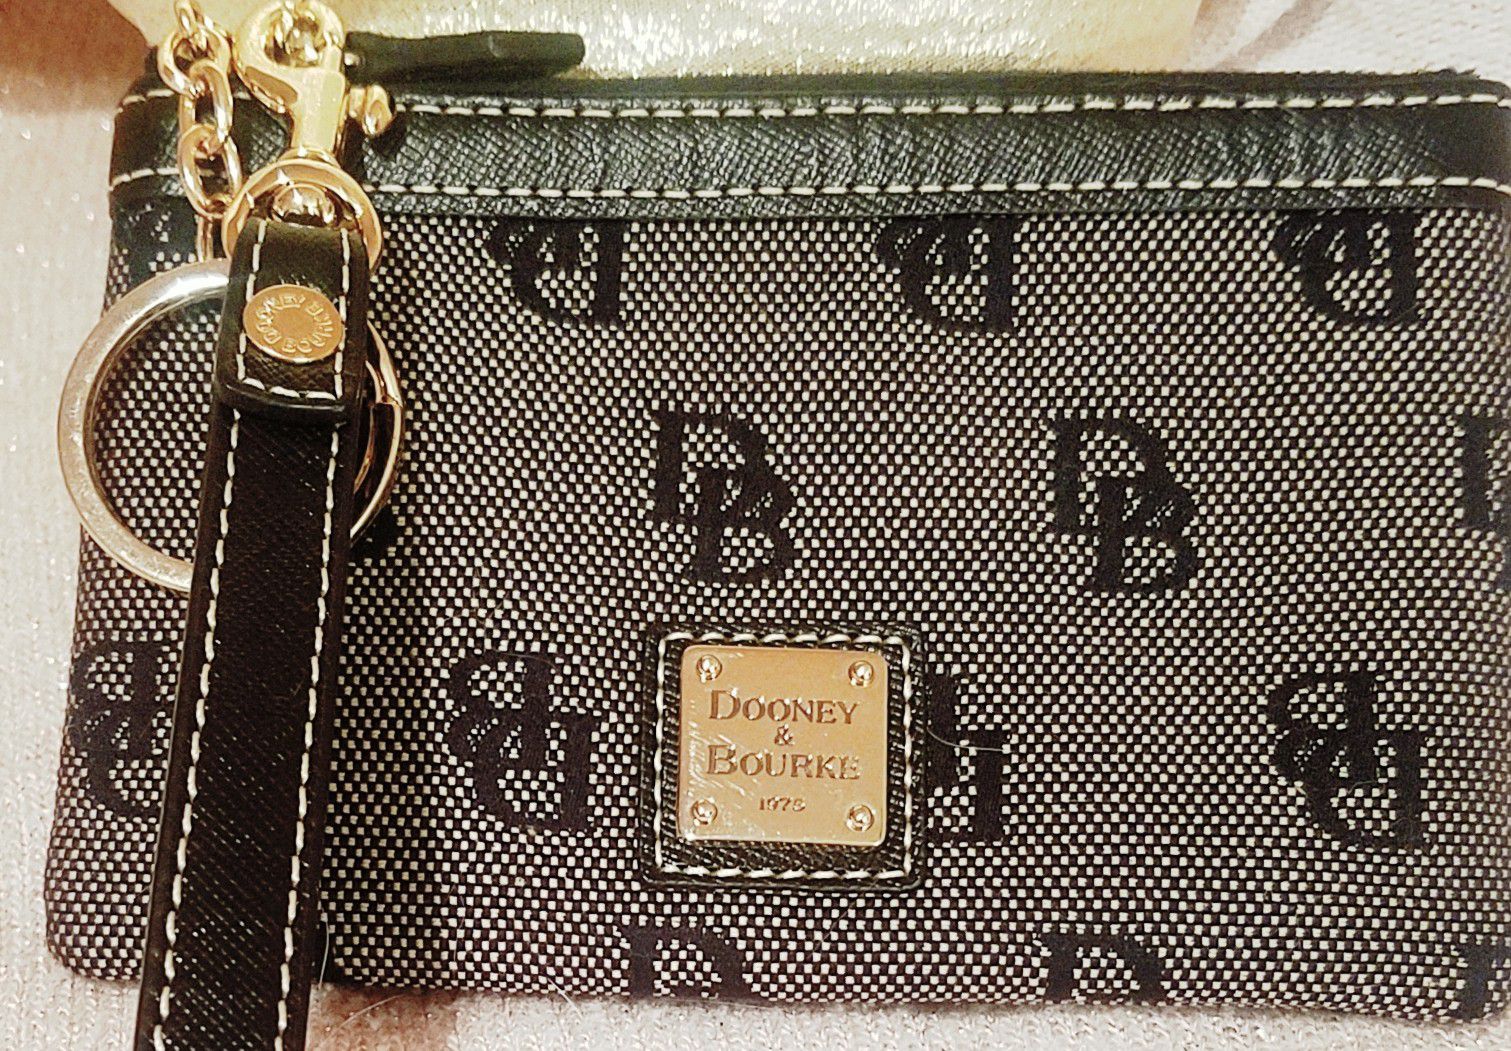 Dooney & Bourke small wristlet wallet